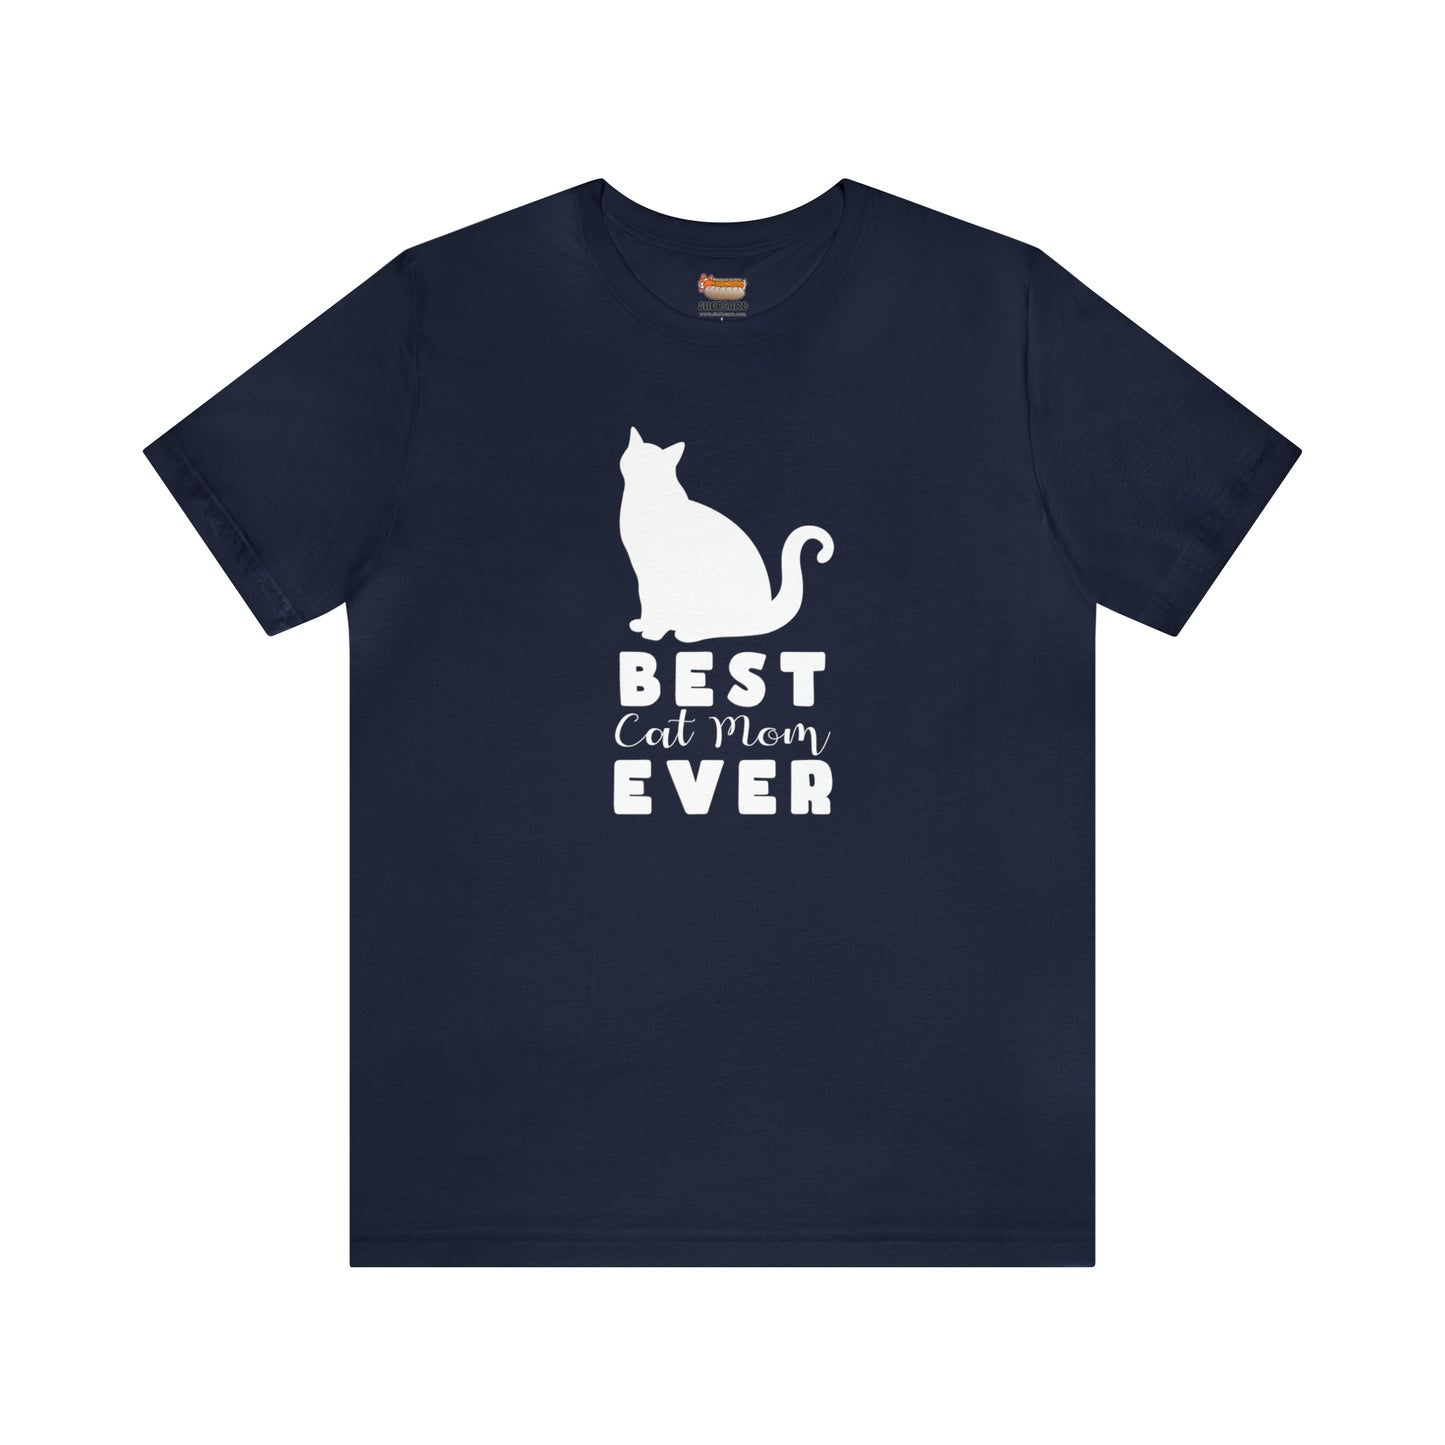 Best Cat Mom Ever Women T-Shirts Unisex Jersey Short Sleeve Tee